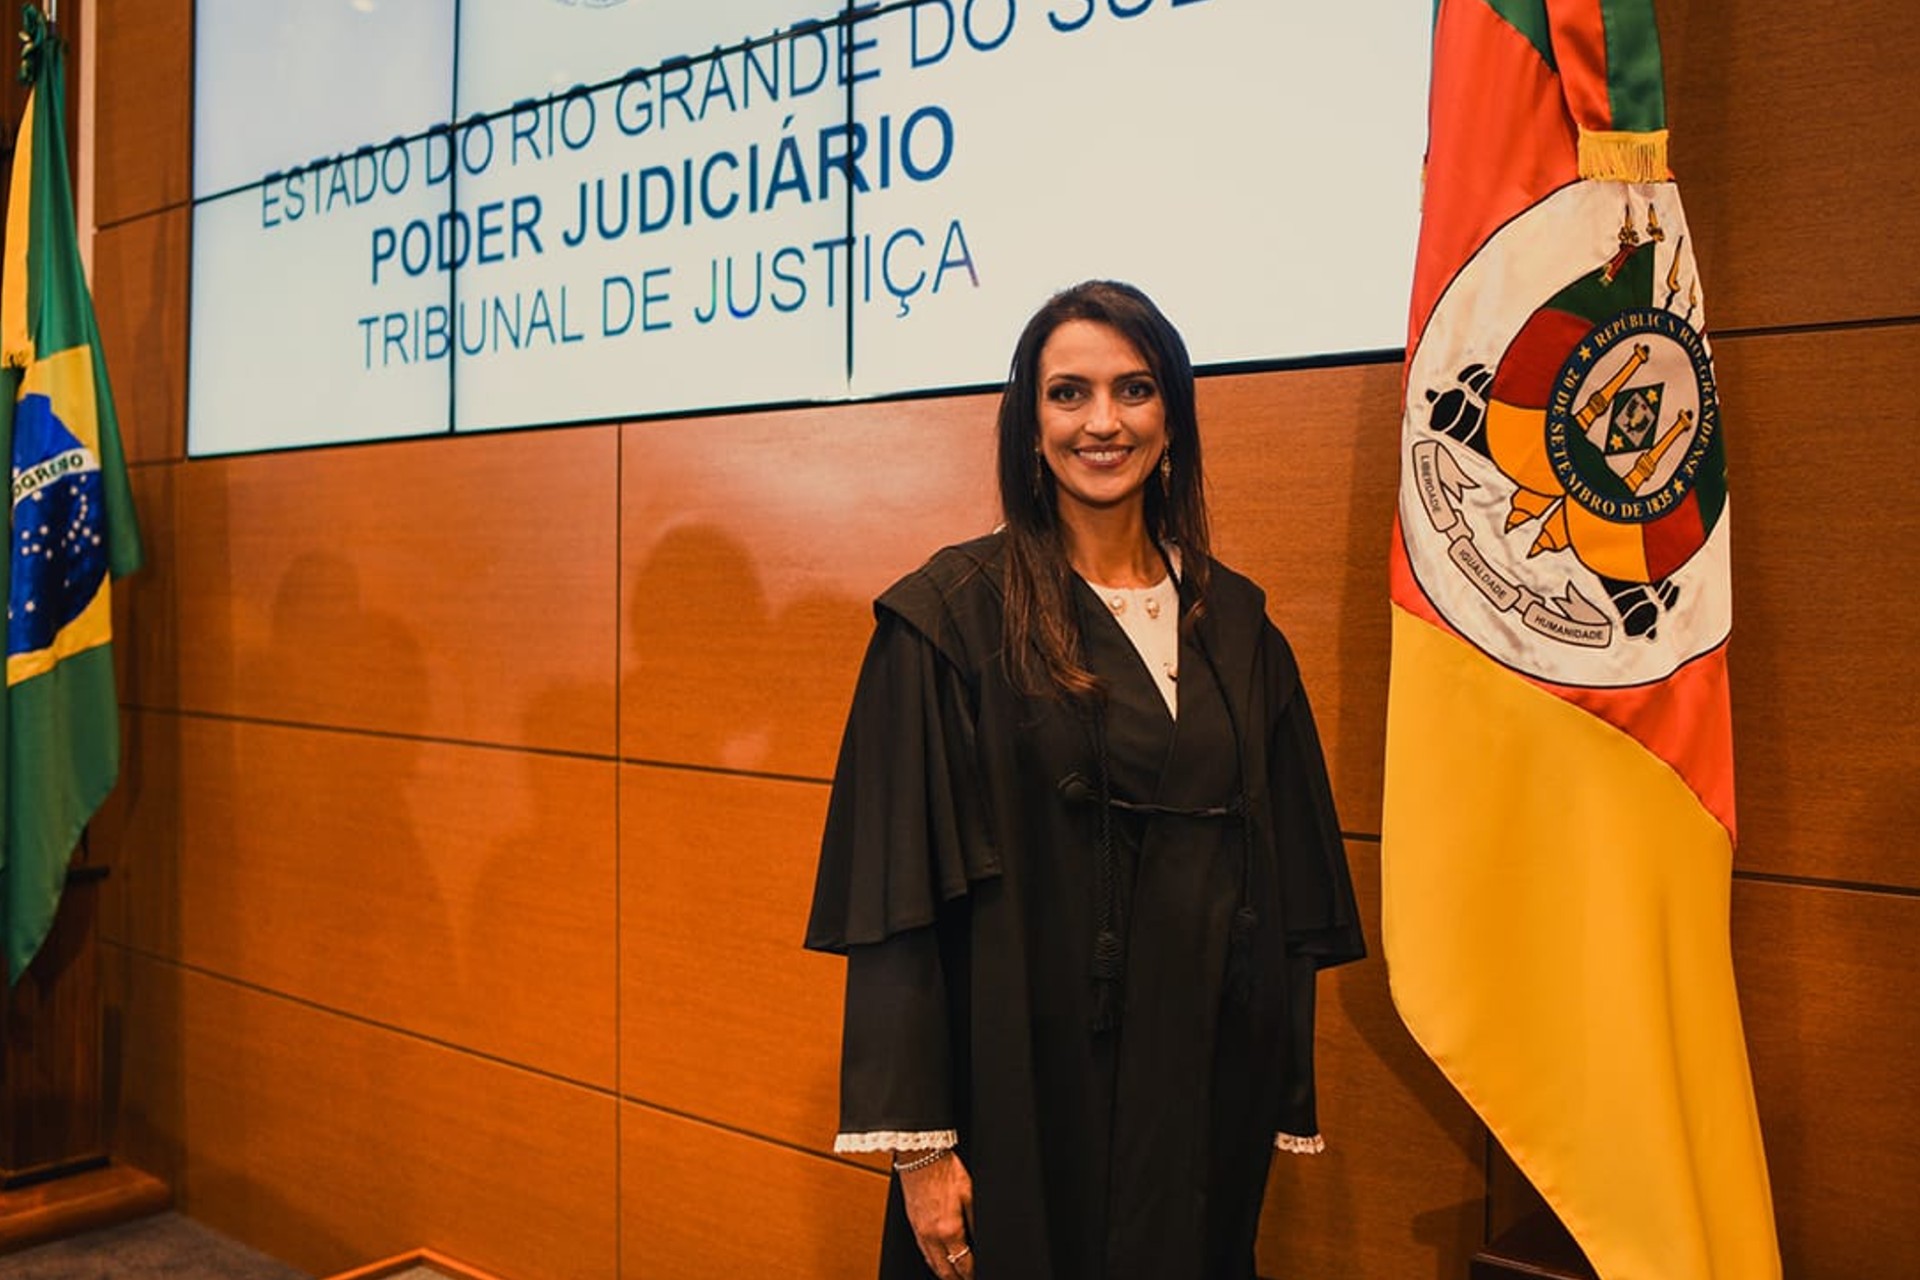 Mestranda da Escola de Direito é empossada juíza no Rio Grande do Sul